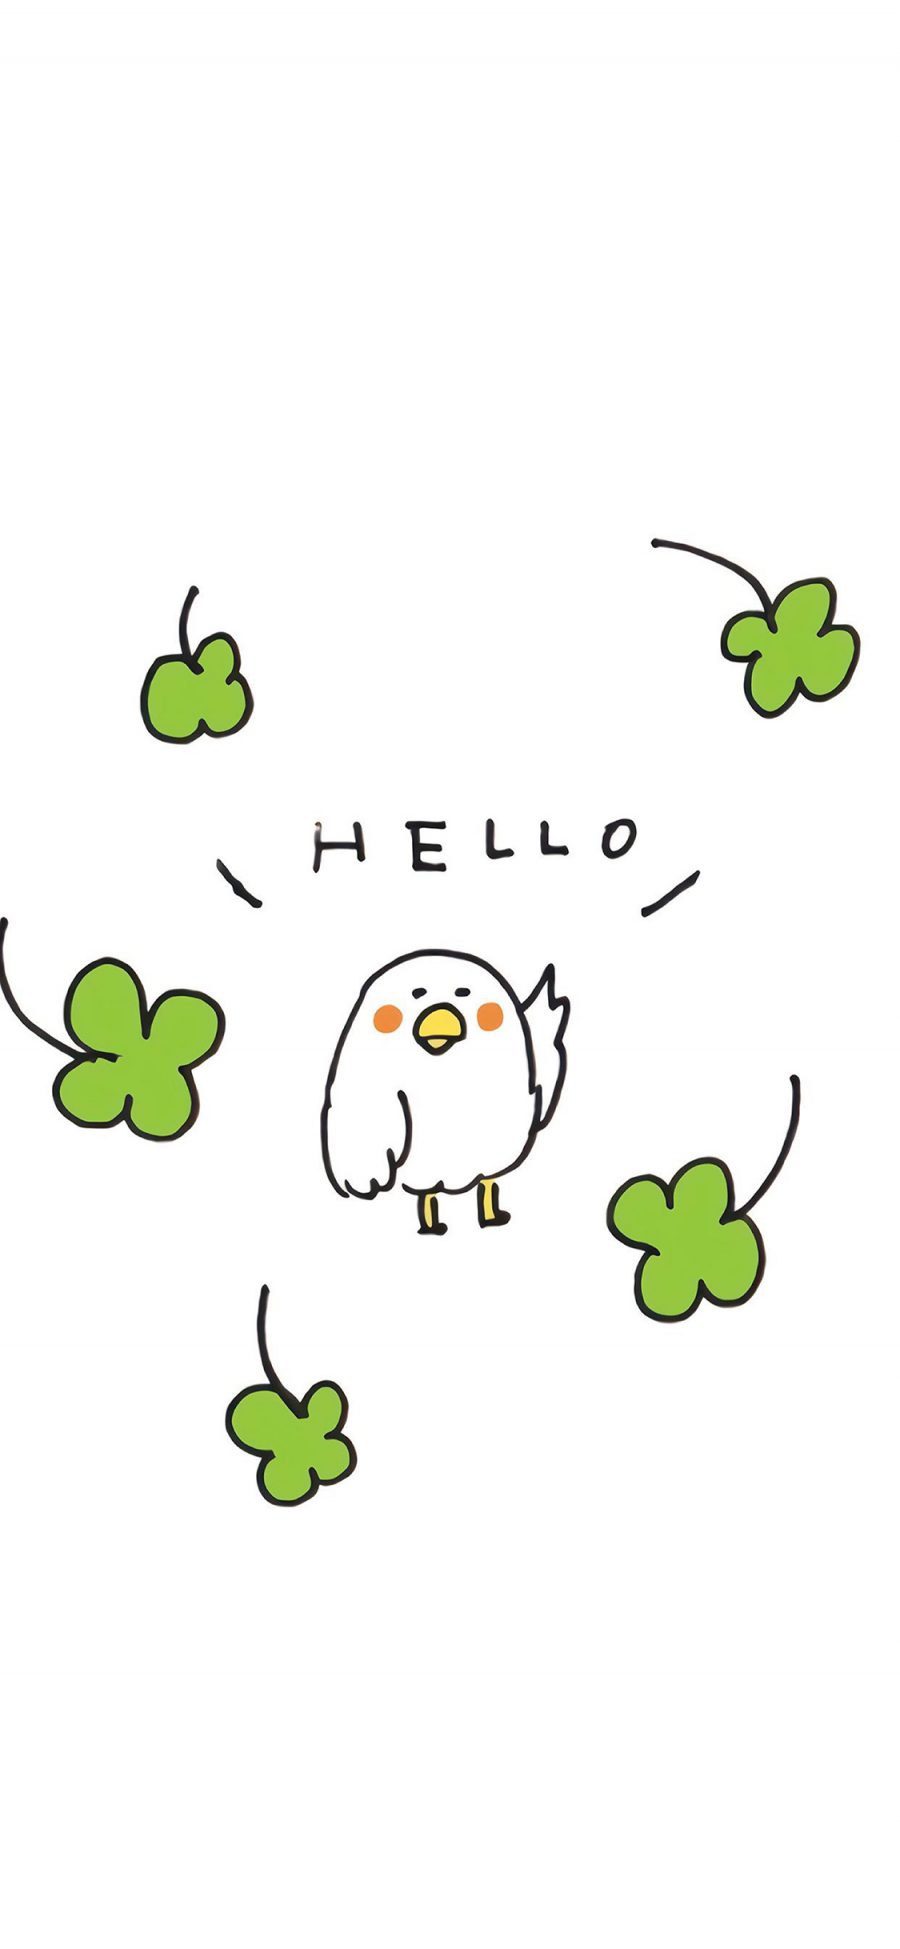 [2436×1125]卡通 小鸡 hello 四叶草 苹果手机动漫壁纸图片